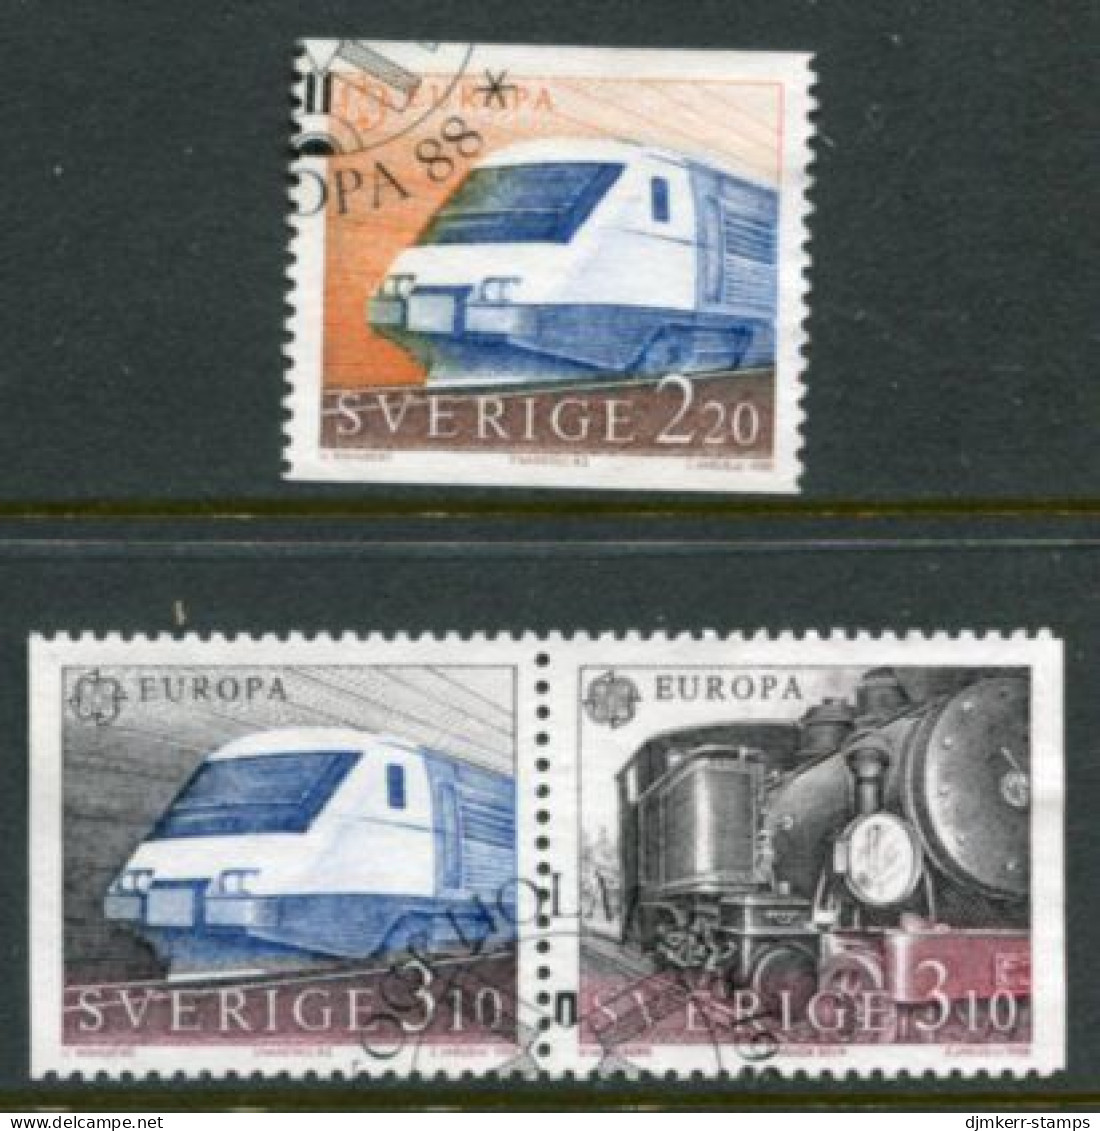 SWEDEN 1988 Europa: Transport. Used.  Michel 1501-03 - Usados